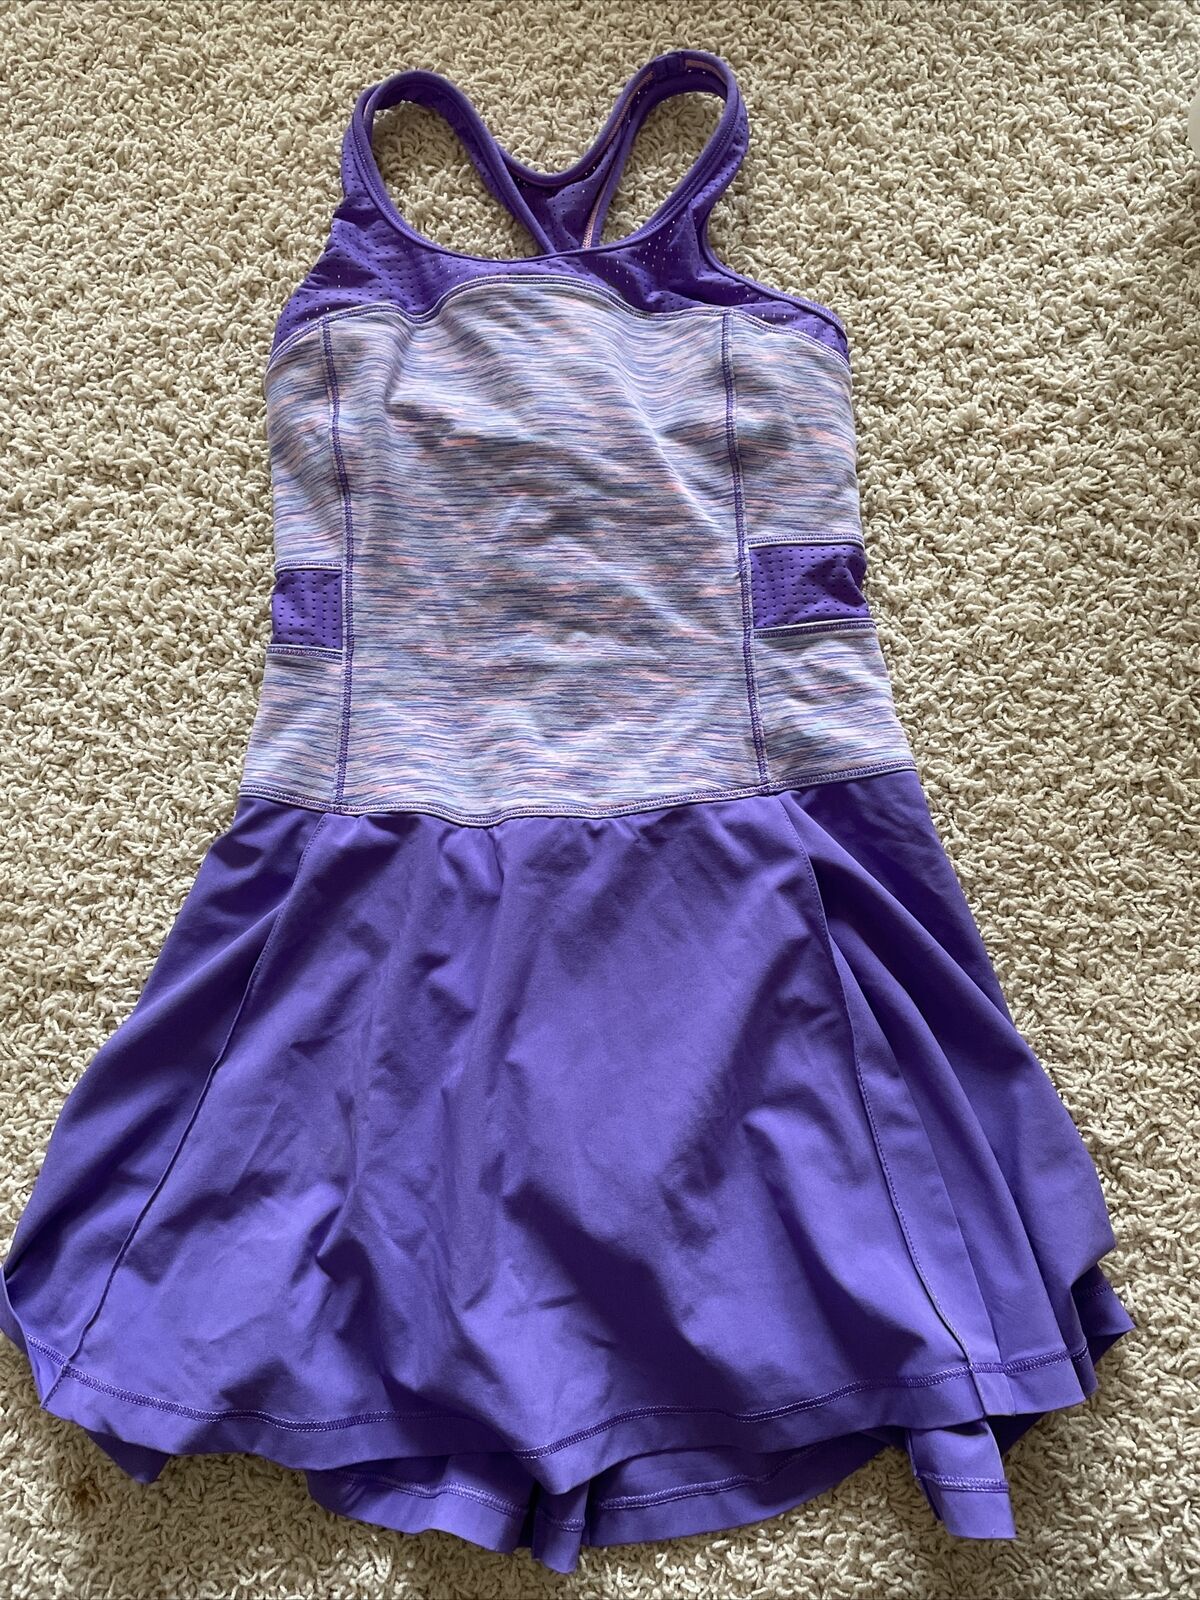 Ivivva Girls Tennis Outfit One Piece, Skirt Skirt, Girls Size 12, Purple, Euc!